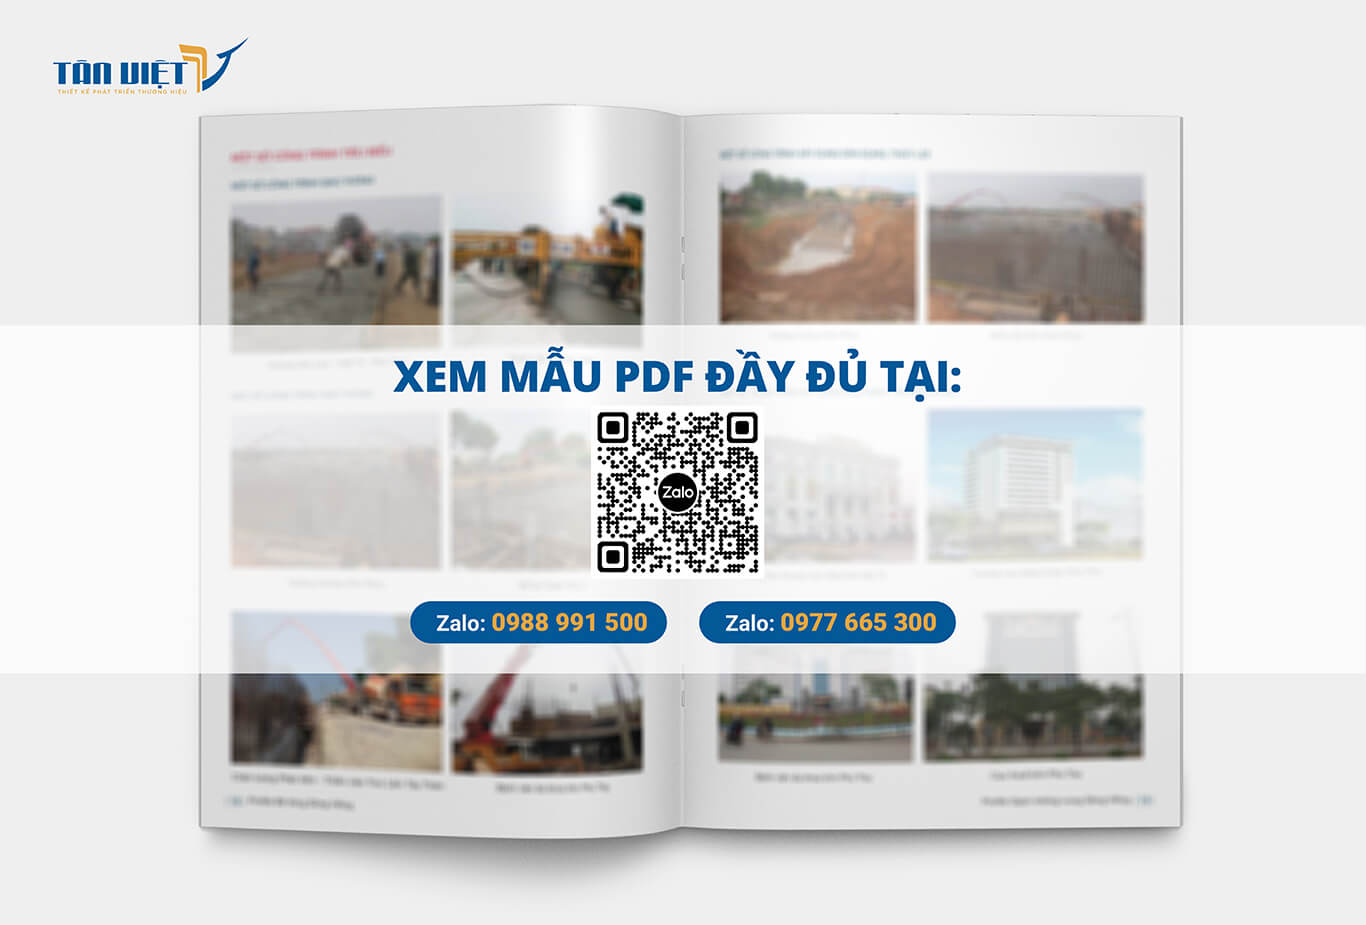 Xem mẫu PDF HSNL Công ty gạch Thượng Long đầy đủ tại đây!